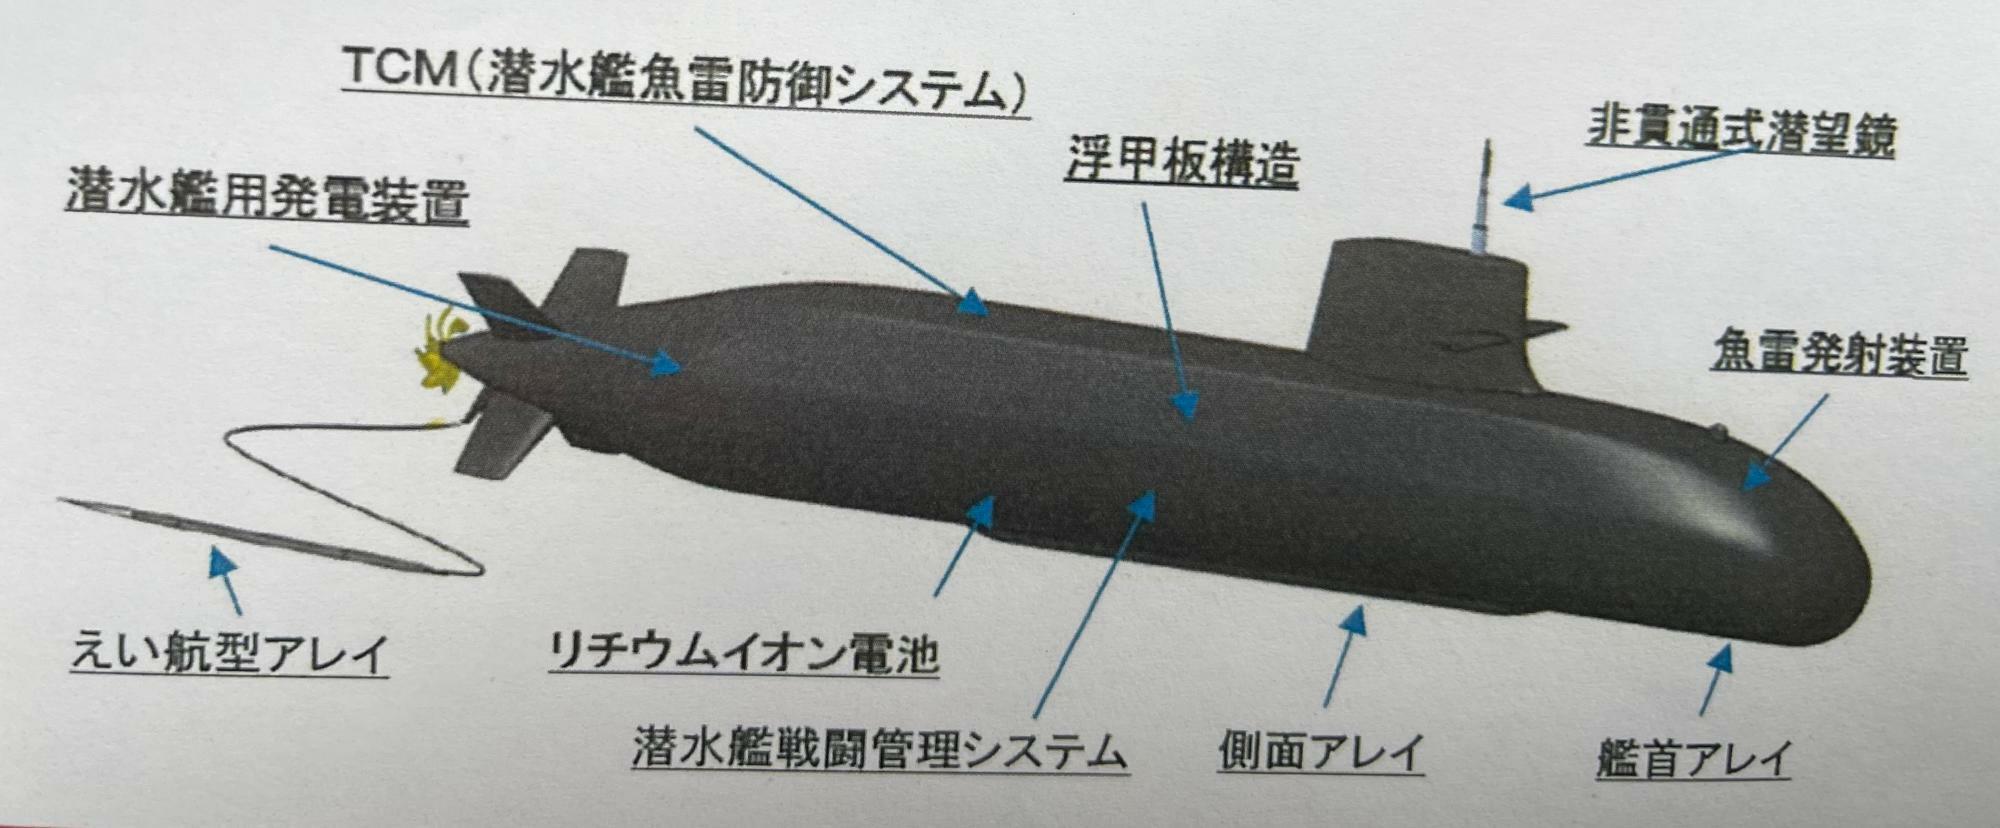 3月8日に就役した海自の最新潜水艦たいげい型3番艦「じんげい」の概要図（海上幕僚監部）